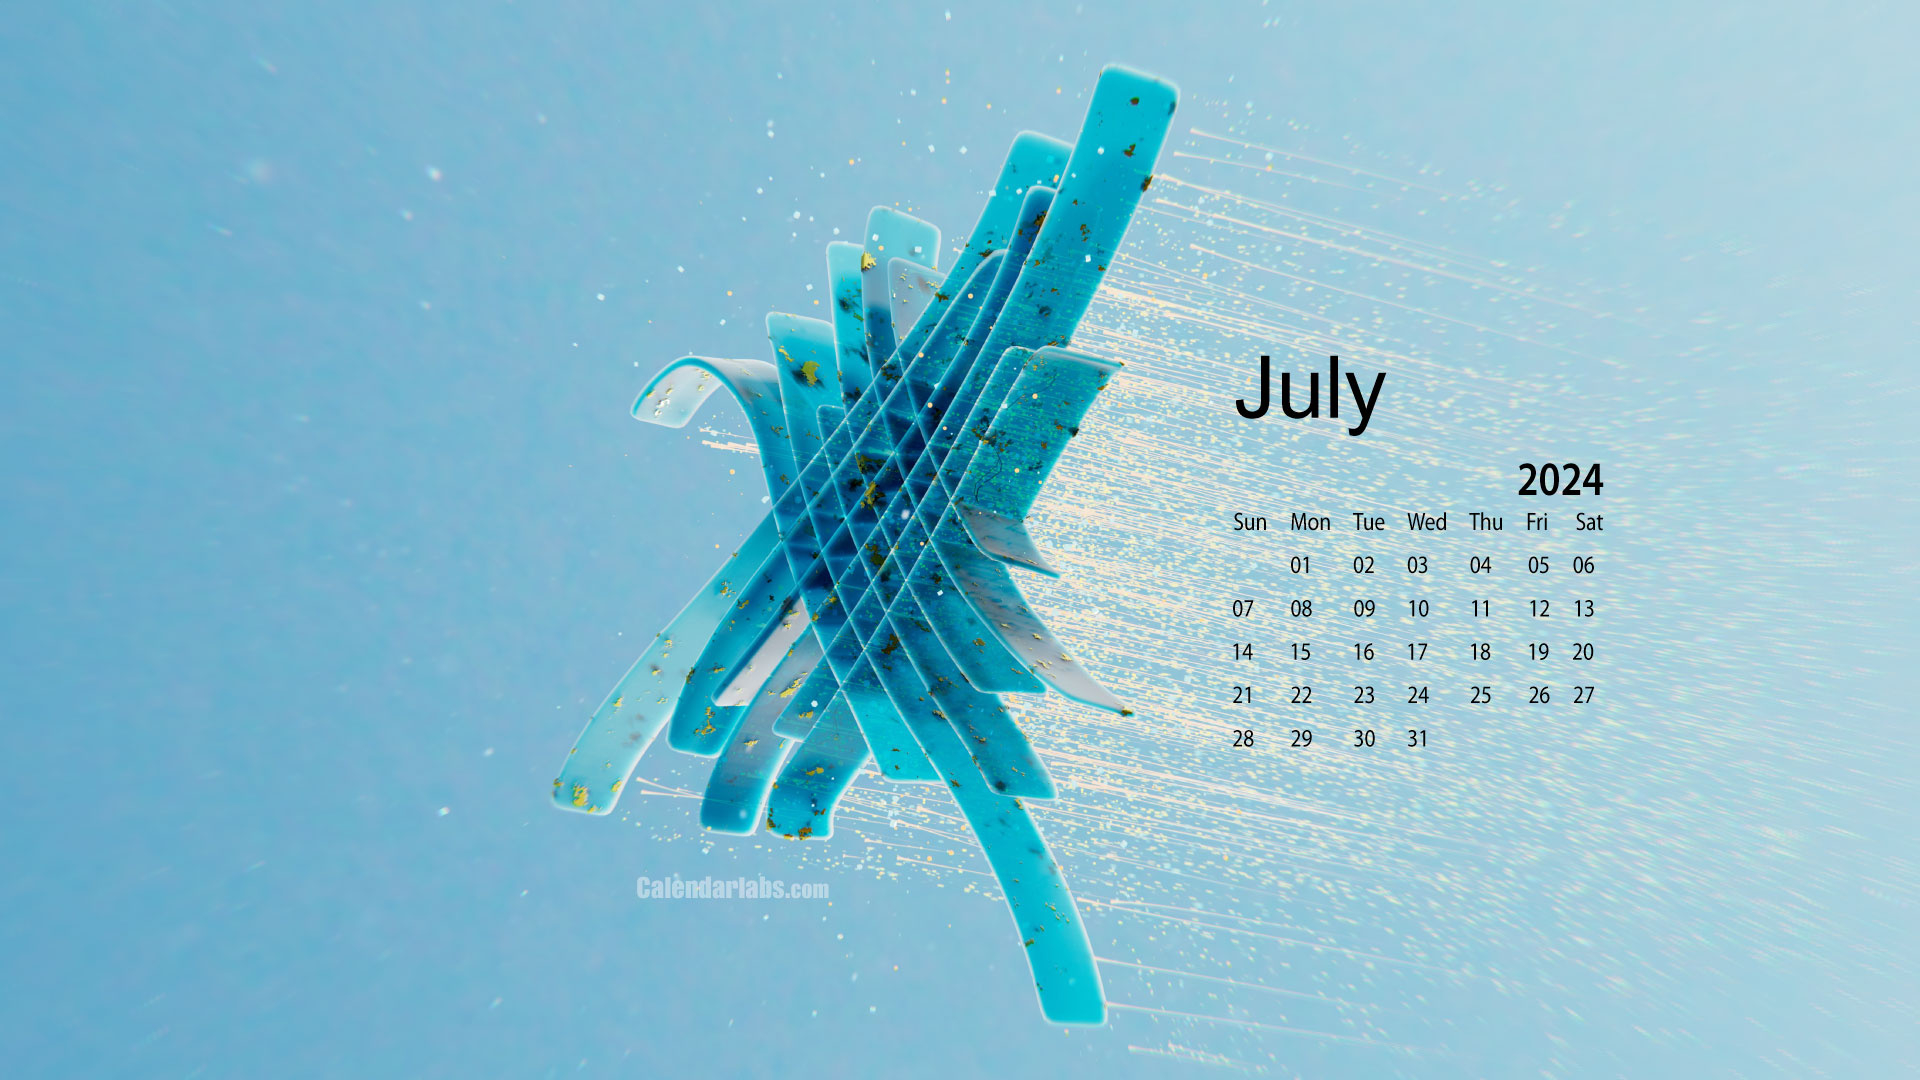 July 2024 Desktop Wallpaper Calendar - Calendarlabs pertaining to July Calendar Desktop Wallpaper 2024